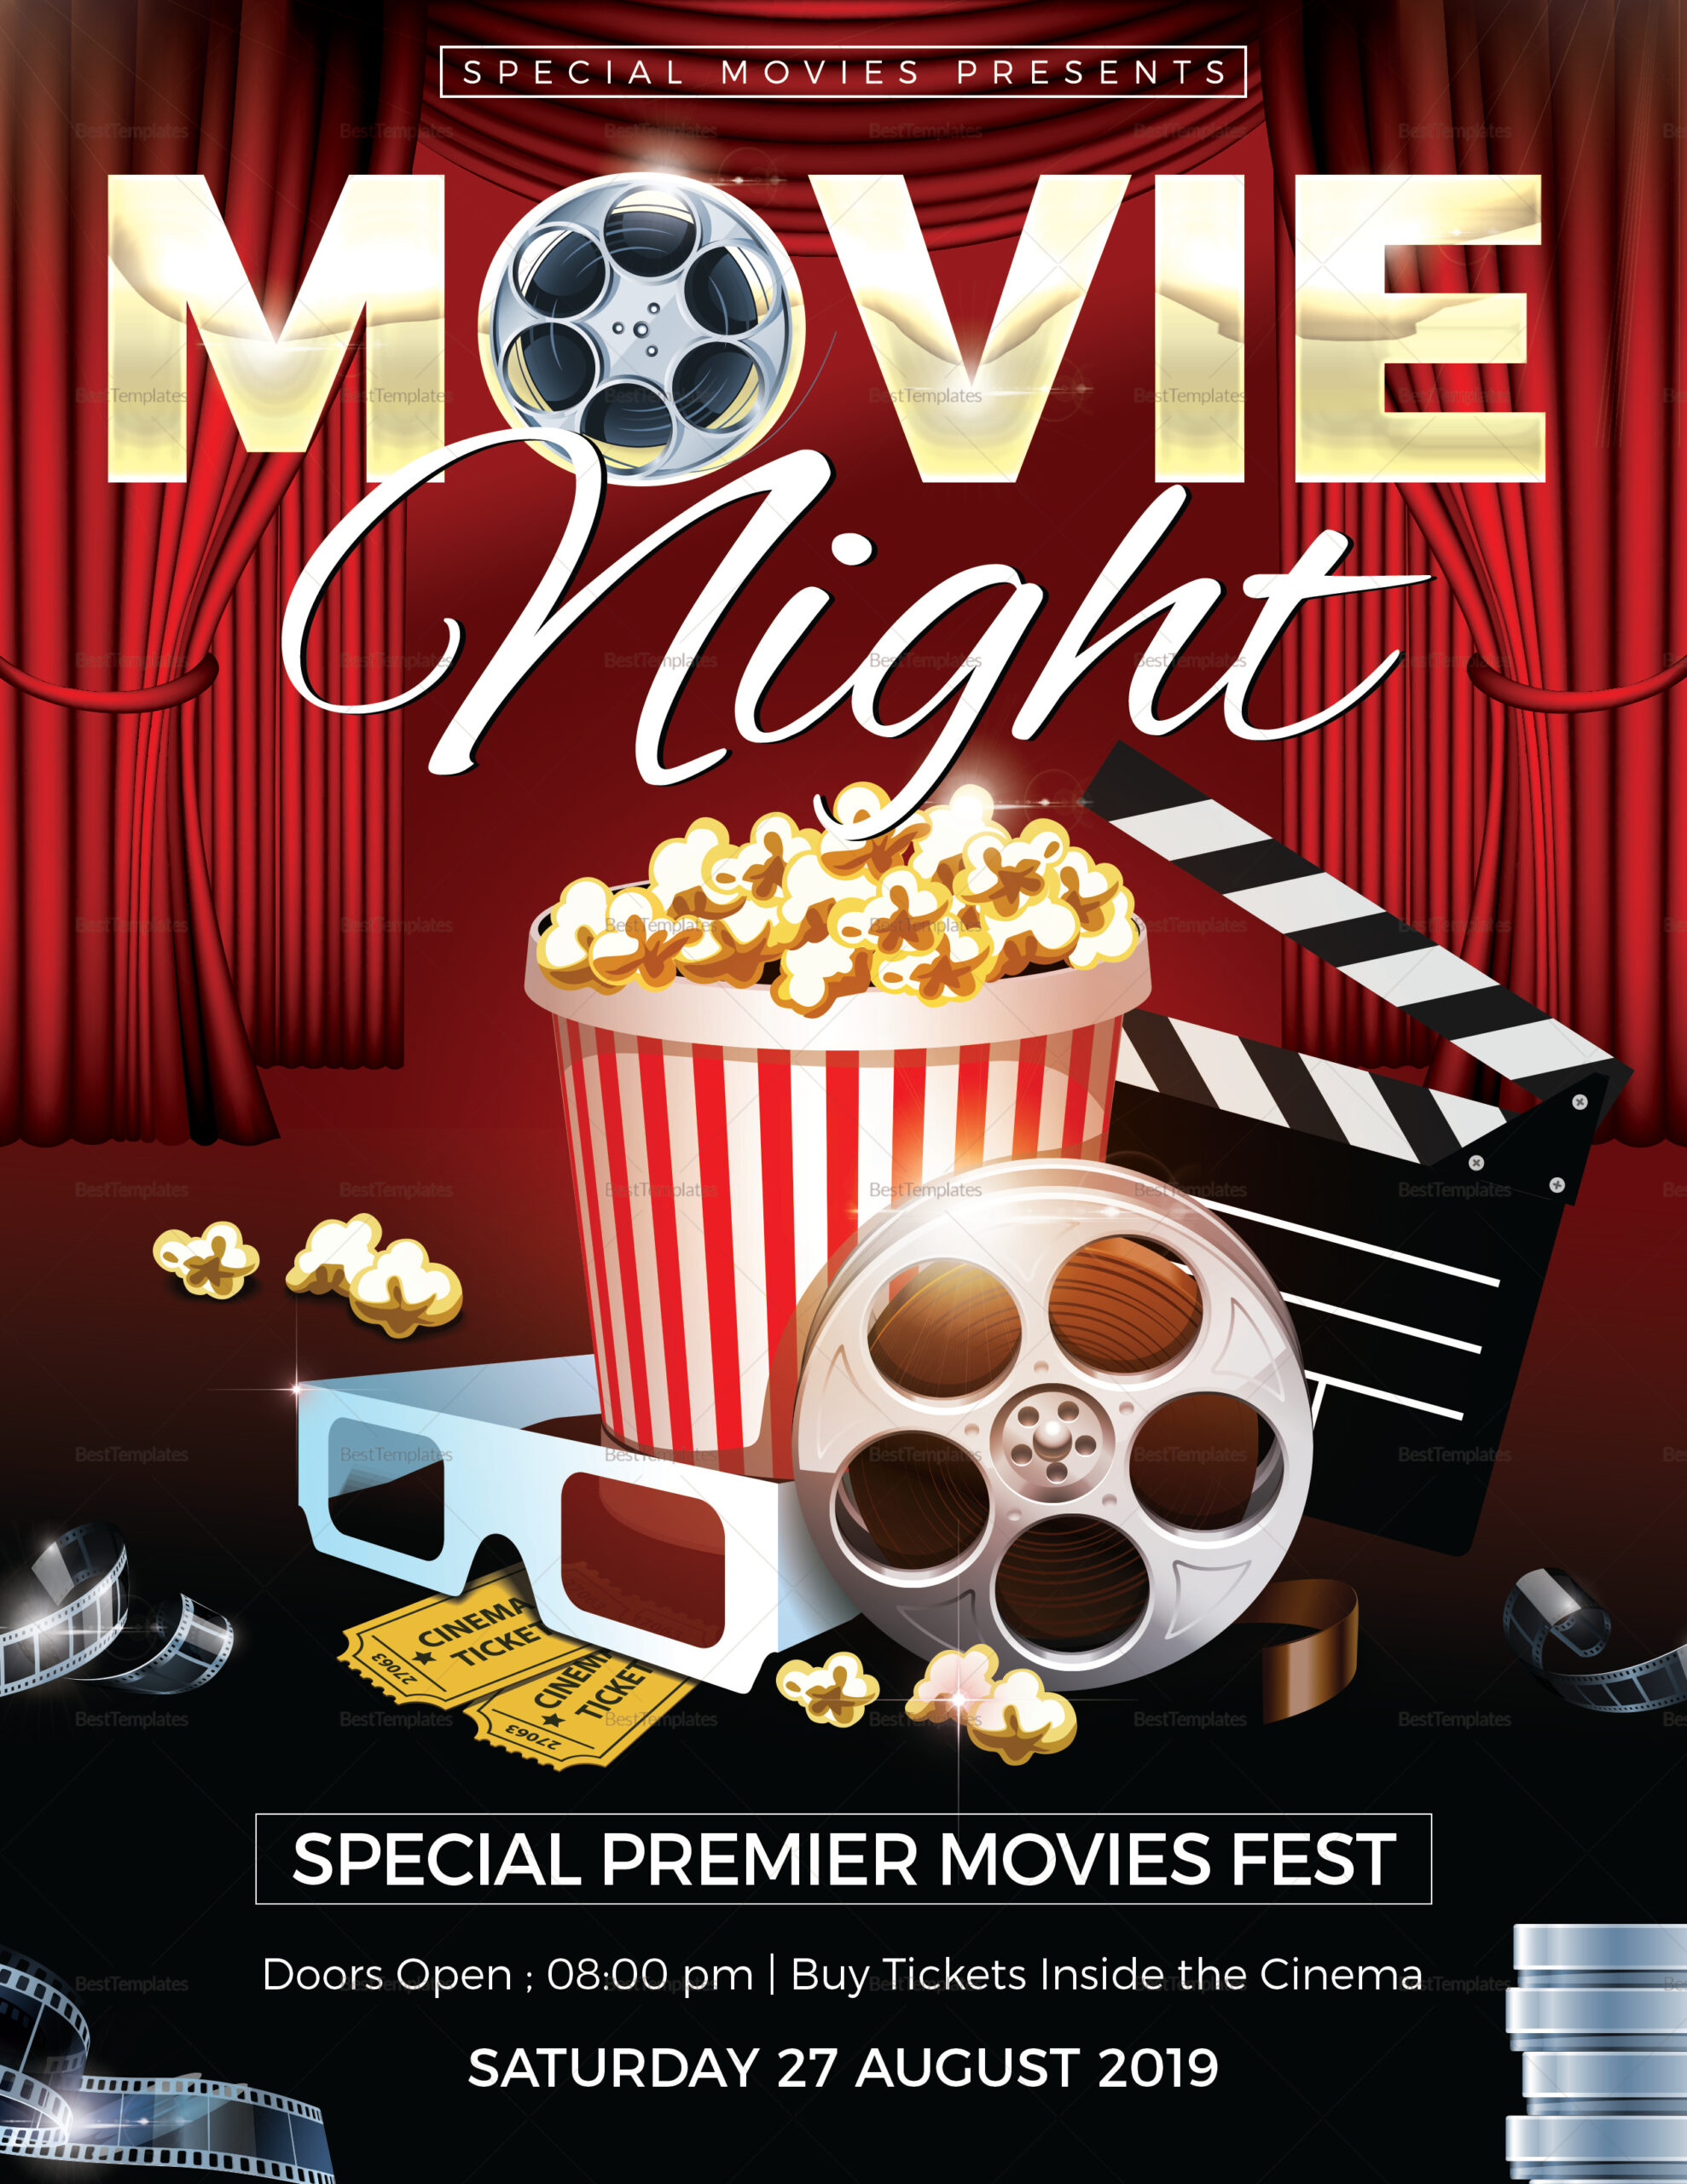 Zona ilmu 10: Movie Night Flyer Sample Pertaining To Church Movie Night Flyer Template With Regard To Church Movie Night Flyer Template